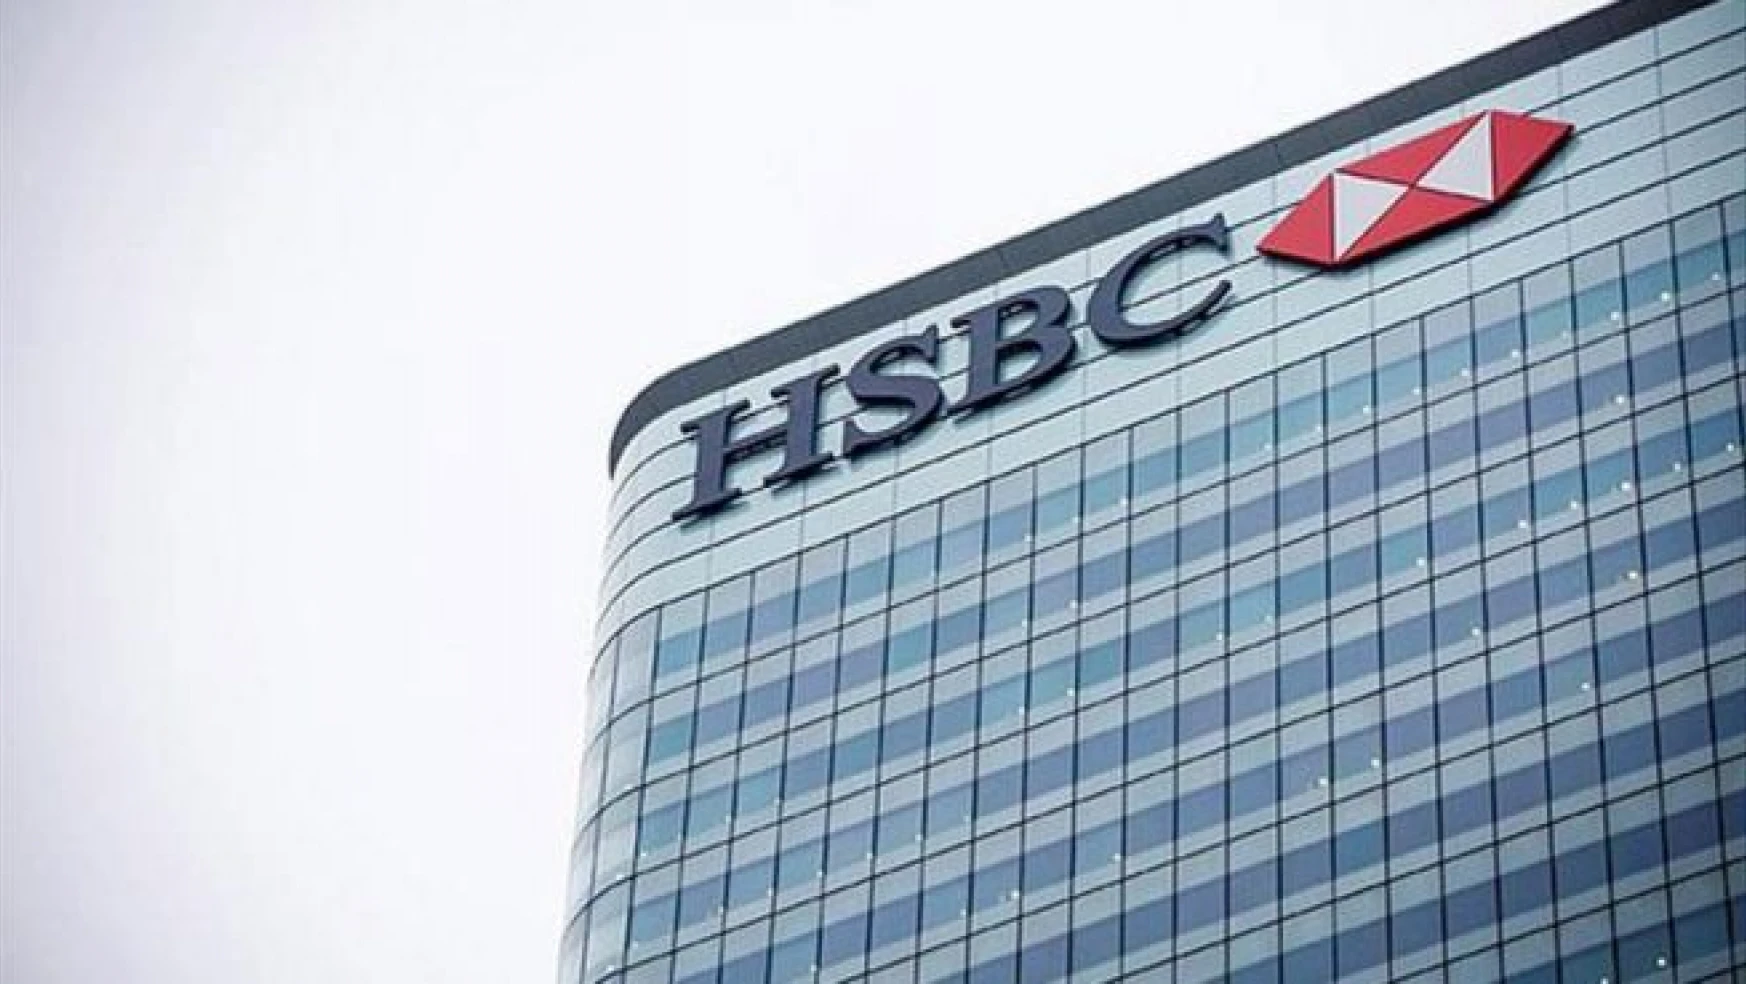 ABD'den HSBC'ye 601 milyon dolar ceza